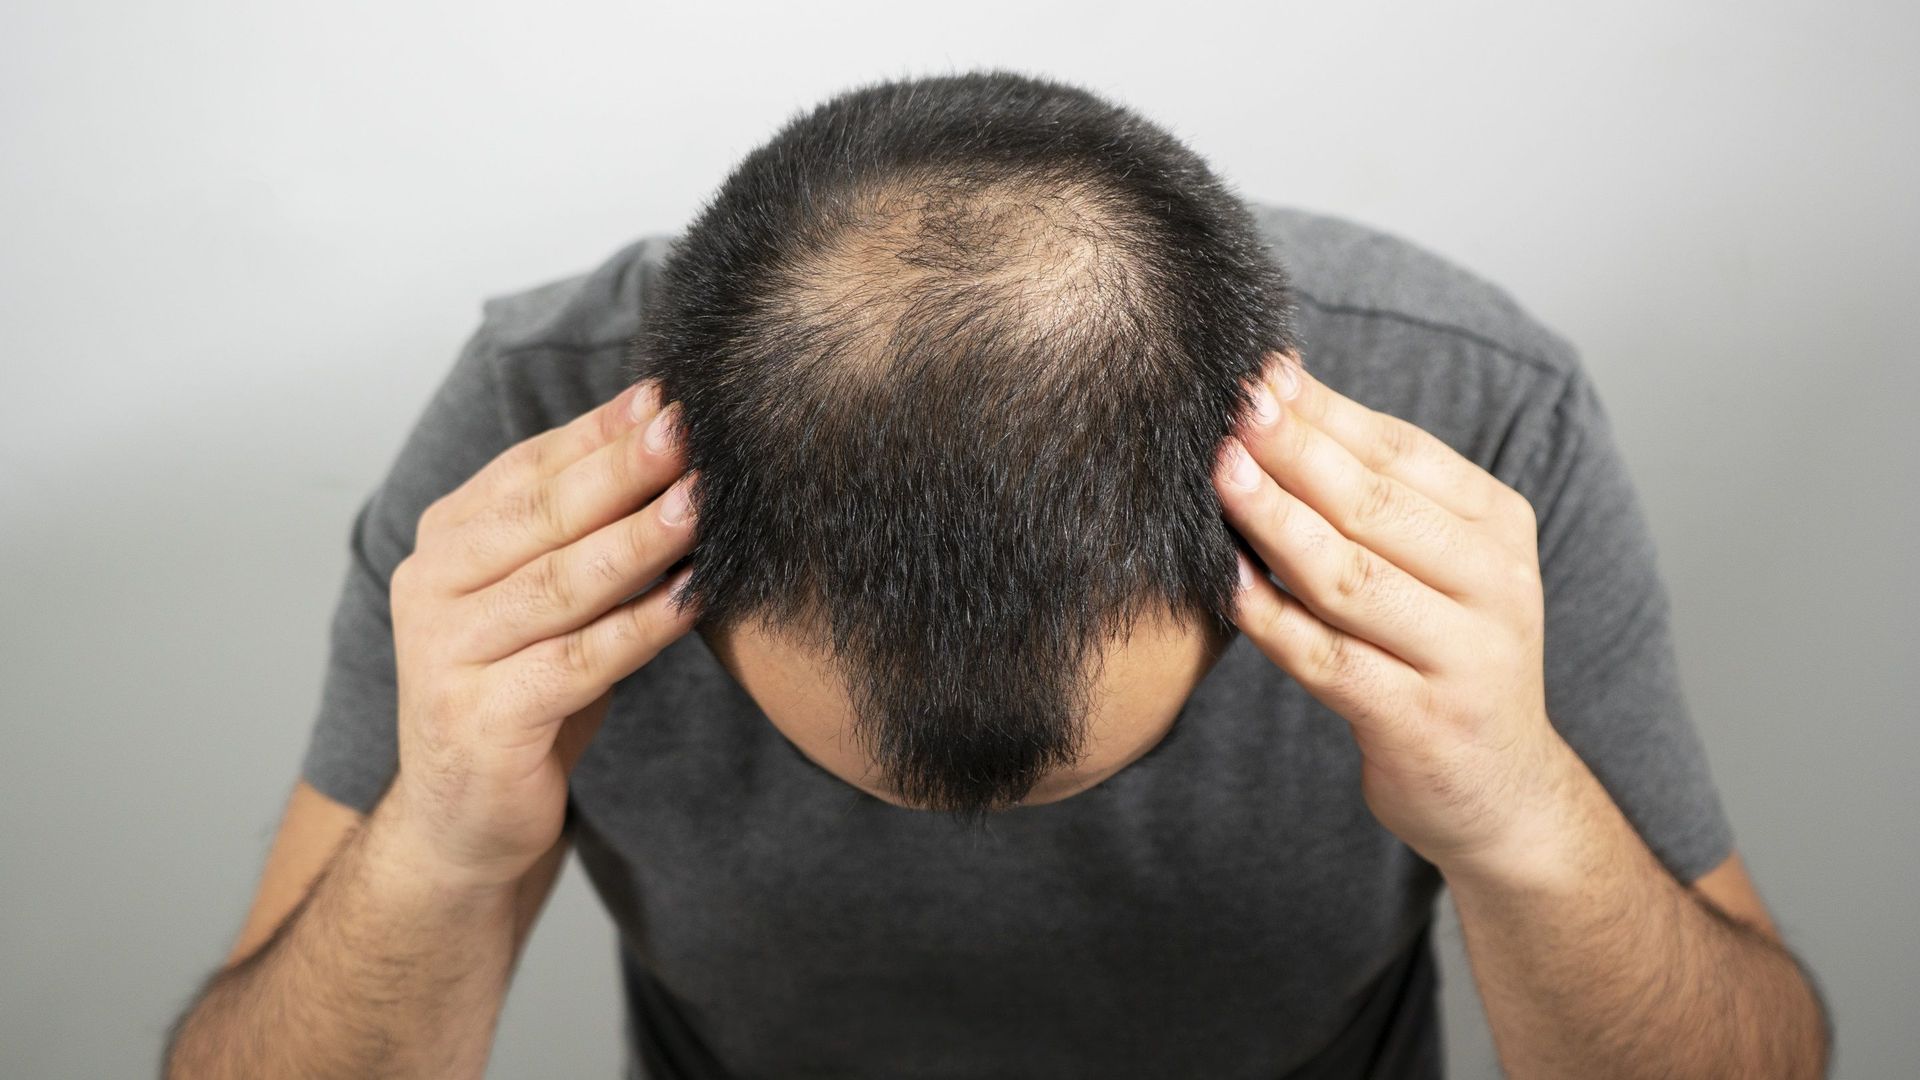 Présent dans les brocolis, le sulforaphane pourrait prévenir la chute de cheveux chez les hommes souffrant d’alopécie androgénétique.